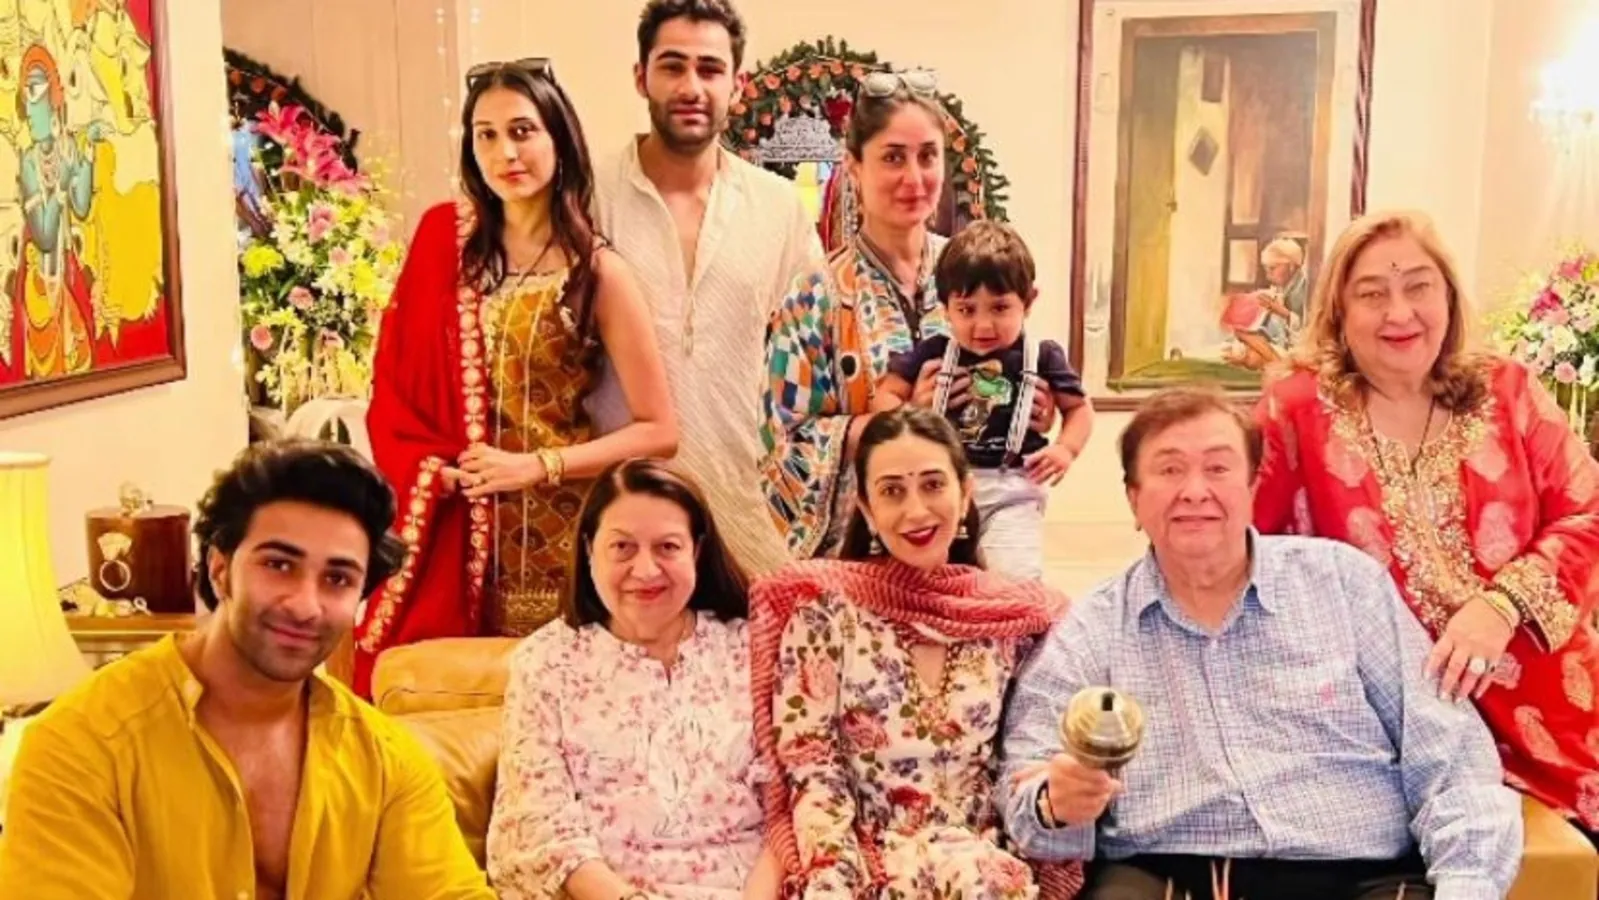  Dentro de las celebraciones de Ganesh Chaturthi de la familia Kapoor con Kareena Kapoor, Karisma Kapoor, Aadar Jain y otros.  ver fotos
